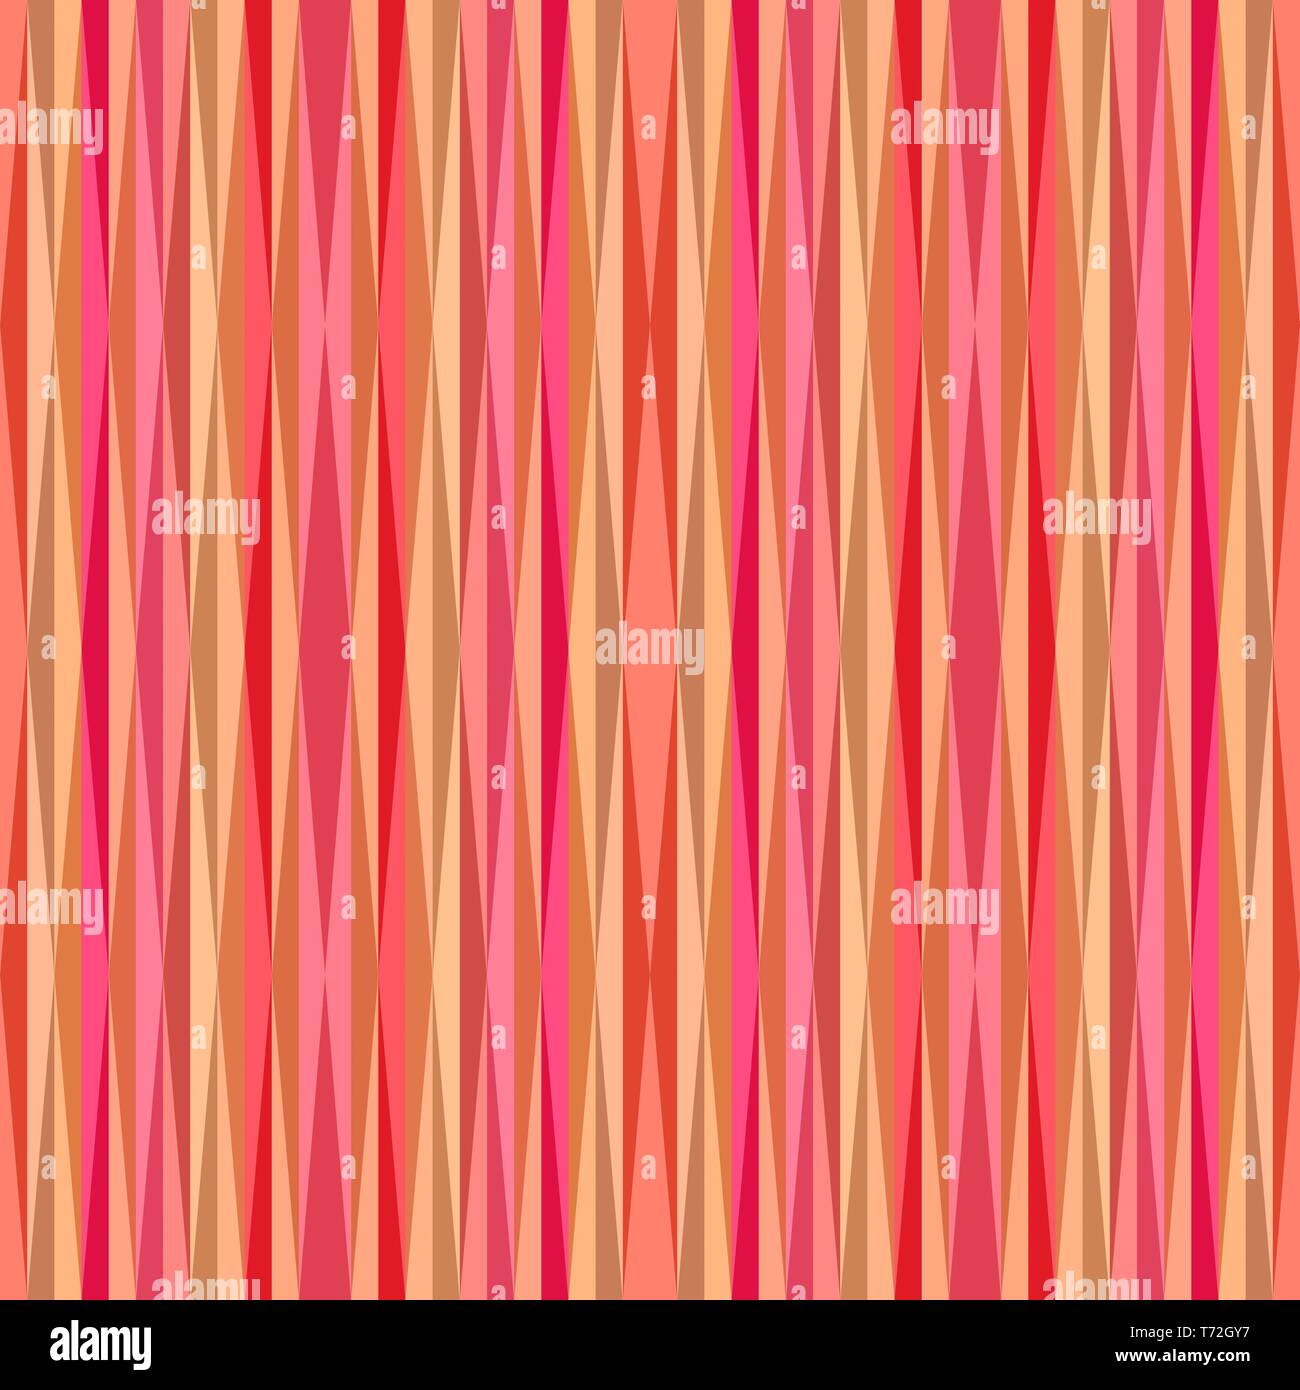 Nahtlose Grafik mit Pastell rot, Koralle und Hell Lachs Farben.  Wiederholbare Textur für Mode Kleid, Geschenkpapier, Tapeten oder kreative  Gestaltung Stockfotografie - Alamy